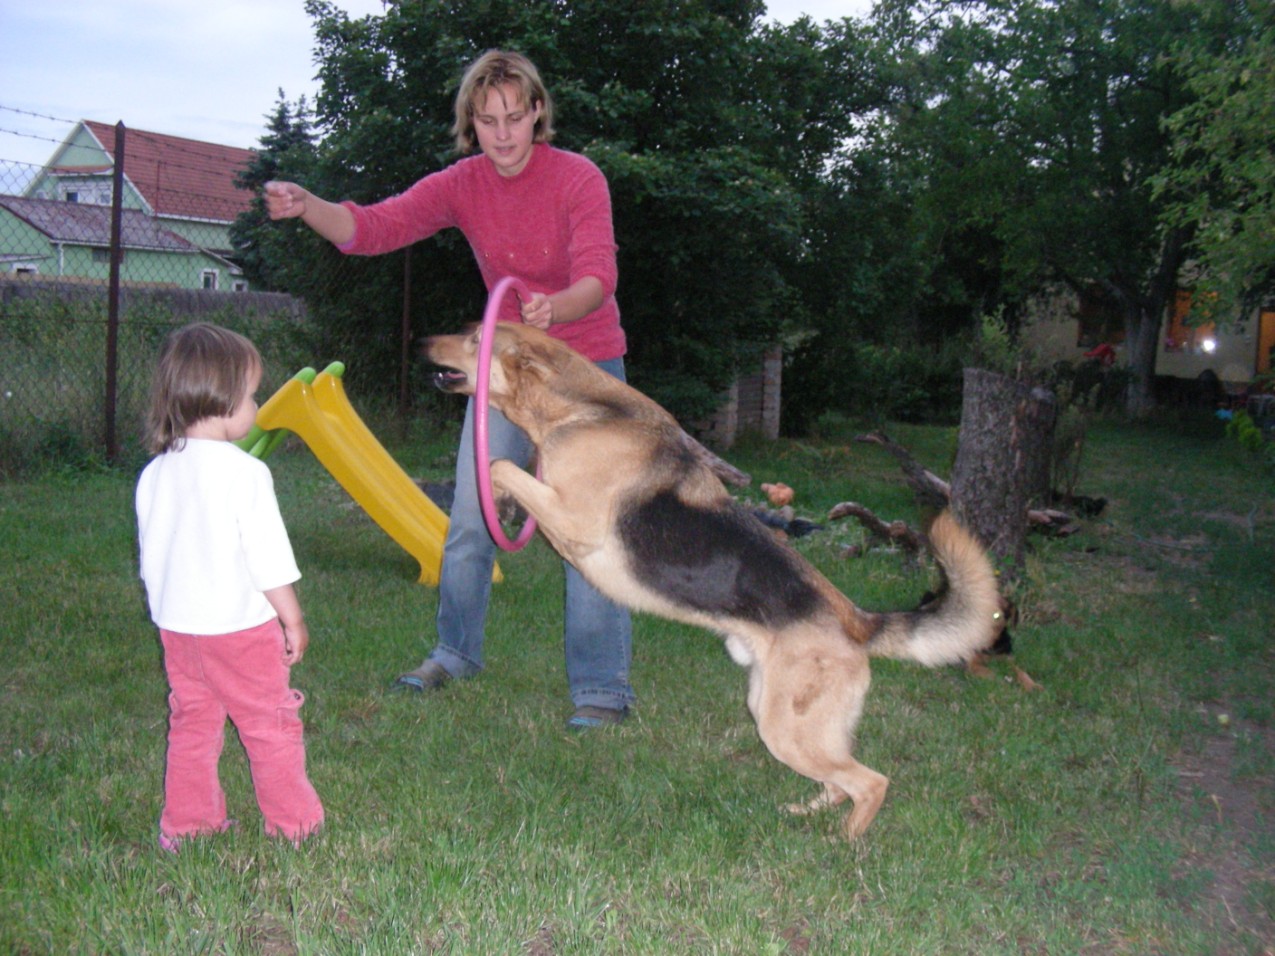 Hányféle játékot tudsz felsorolni kutyával? Mennyivel tudják szüleid kiegészíteni? Milyen napi feladatok vannak egy kutyával? Milyen eszközöket ismersz a kutya tisztán tartására?